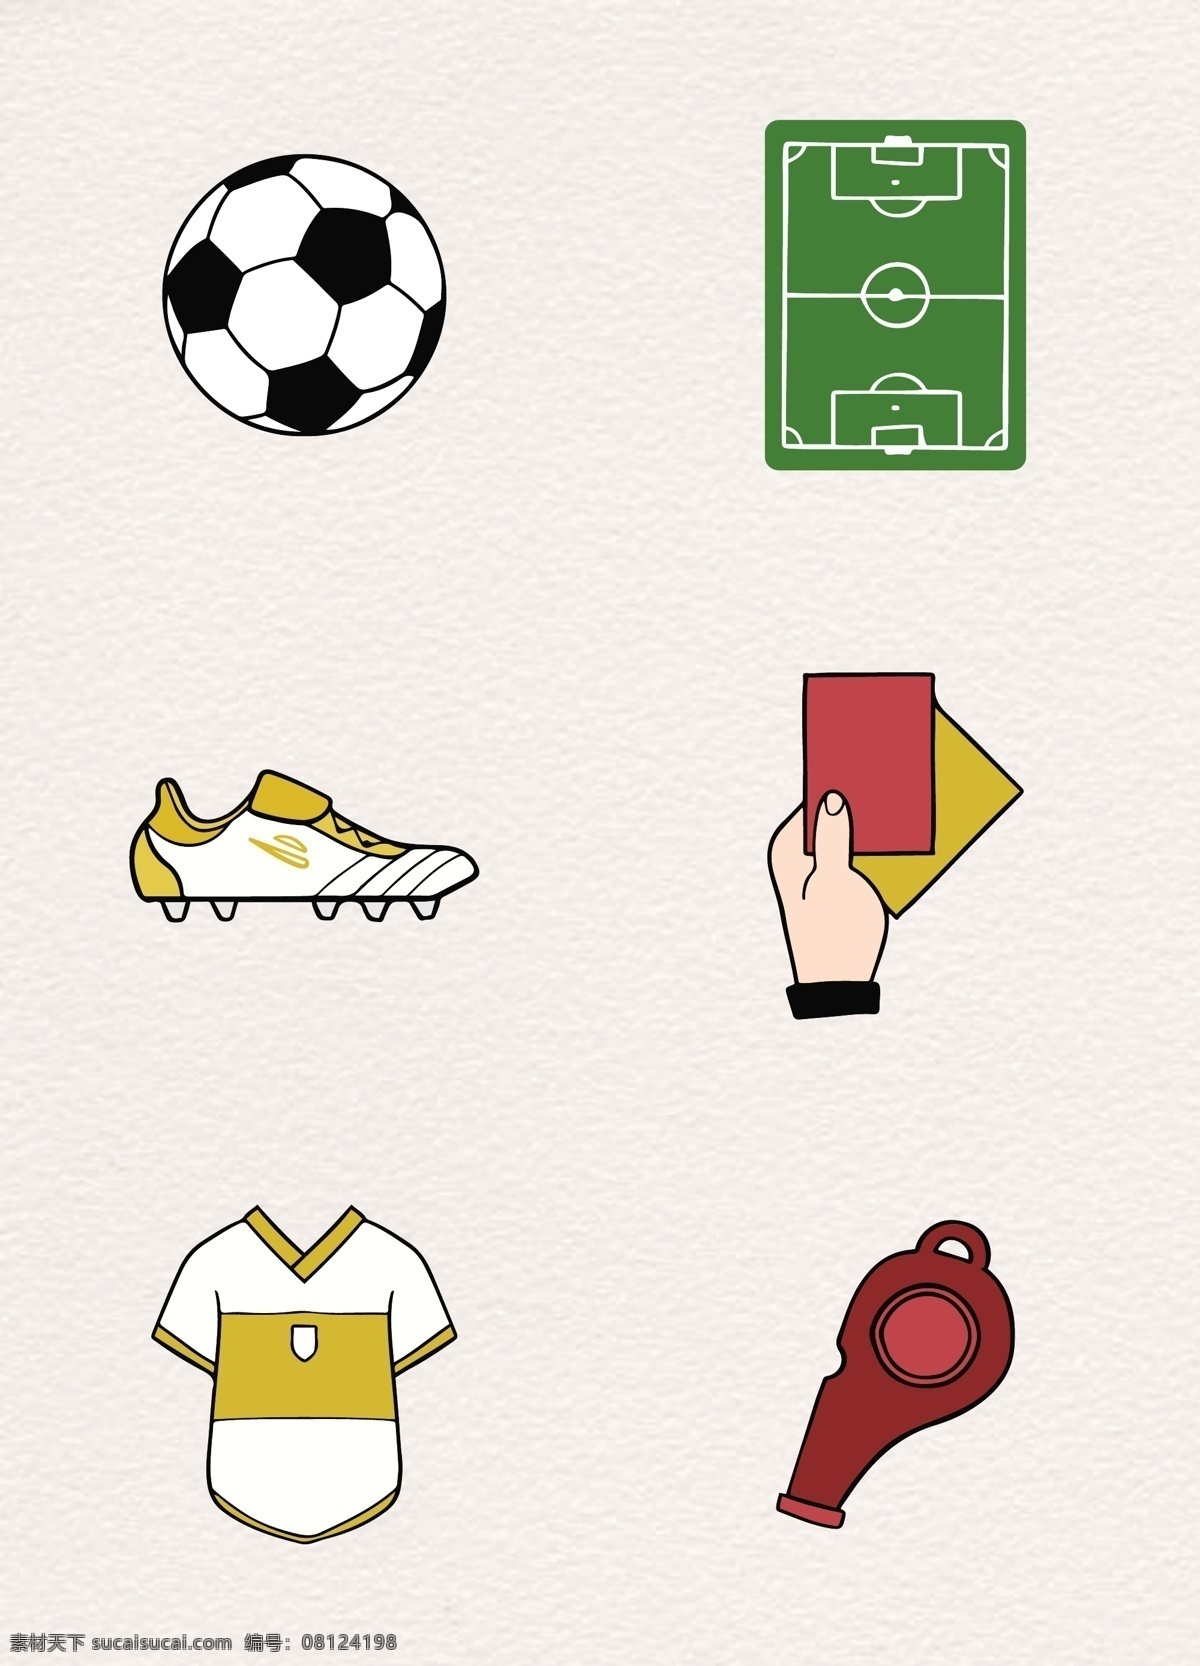 手绘 风格 足球比赛 图标 卡通 卡通足球 球衣 哨子 防滑鞋 卡通足球比赛 足球比赛素材 卡通球场 红牌黄牌